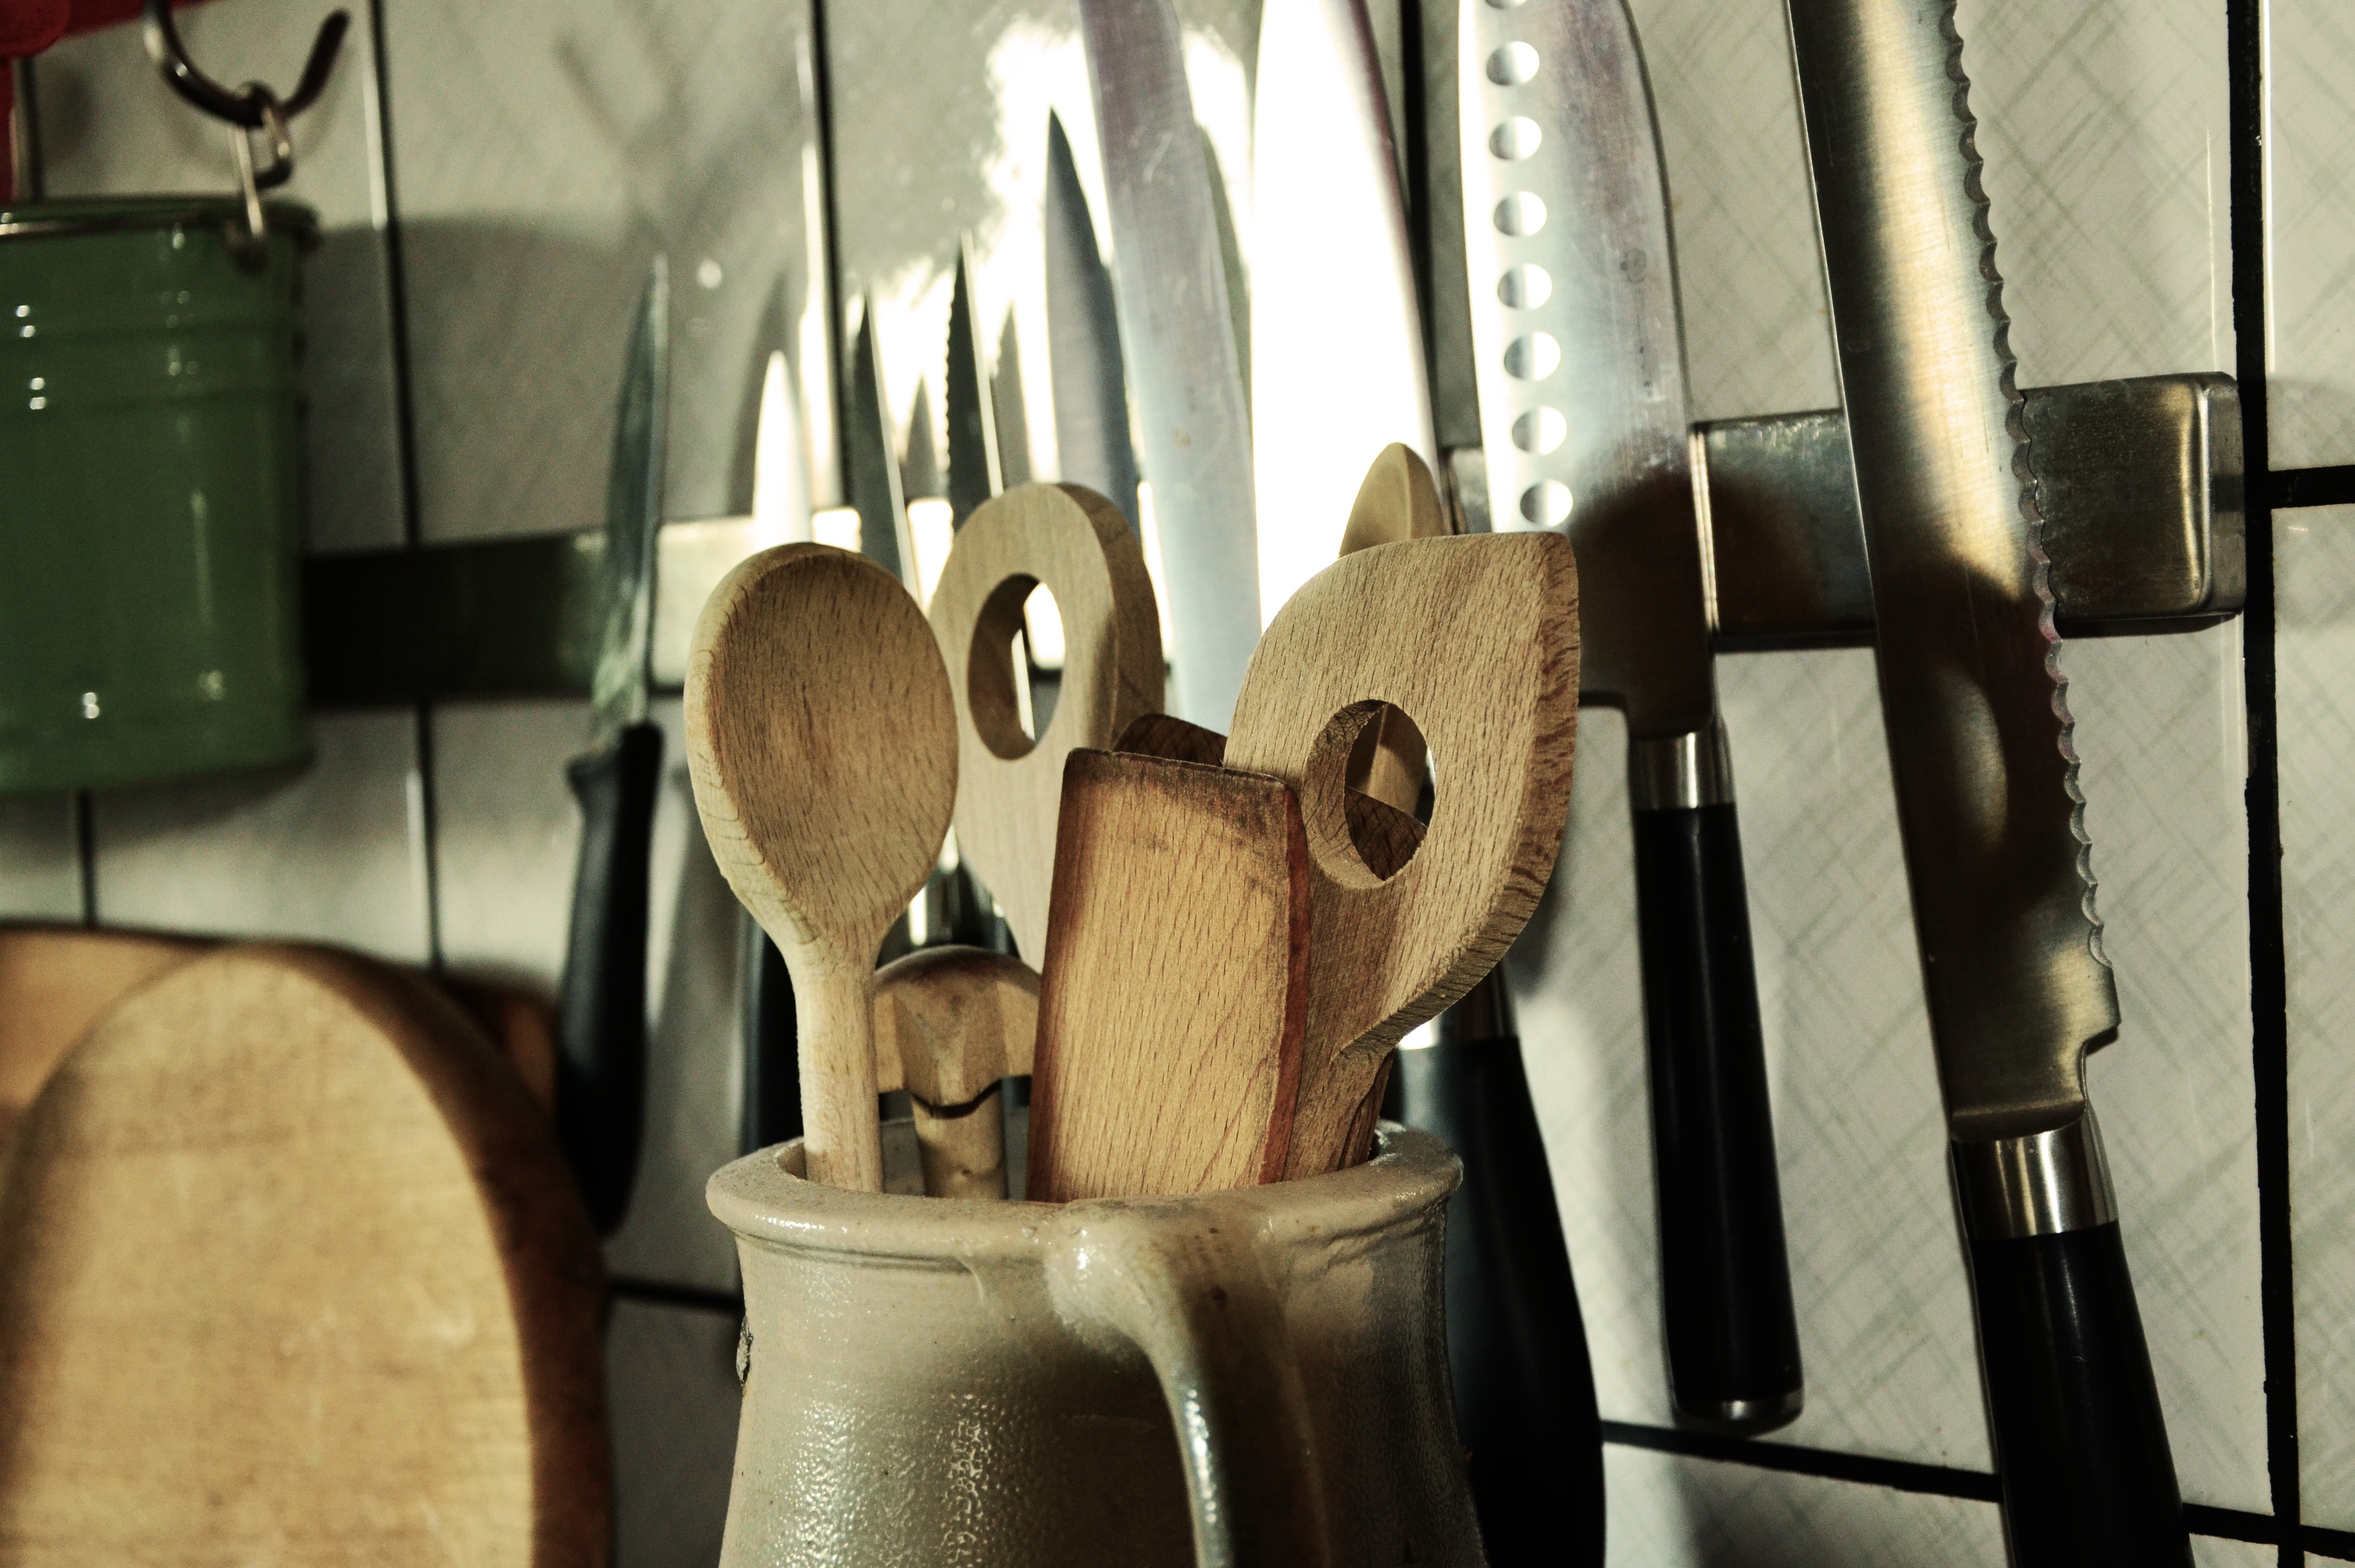 Kitchen Utensils, Knife, Wooden Spoon, indoors, no people